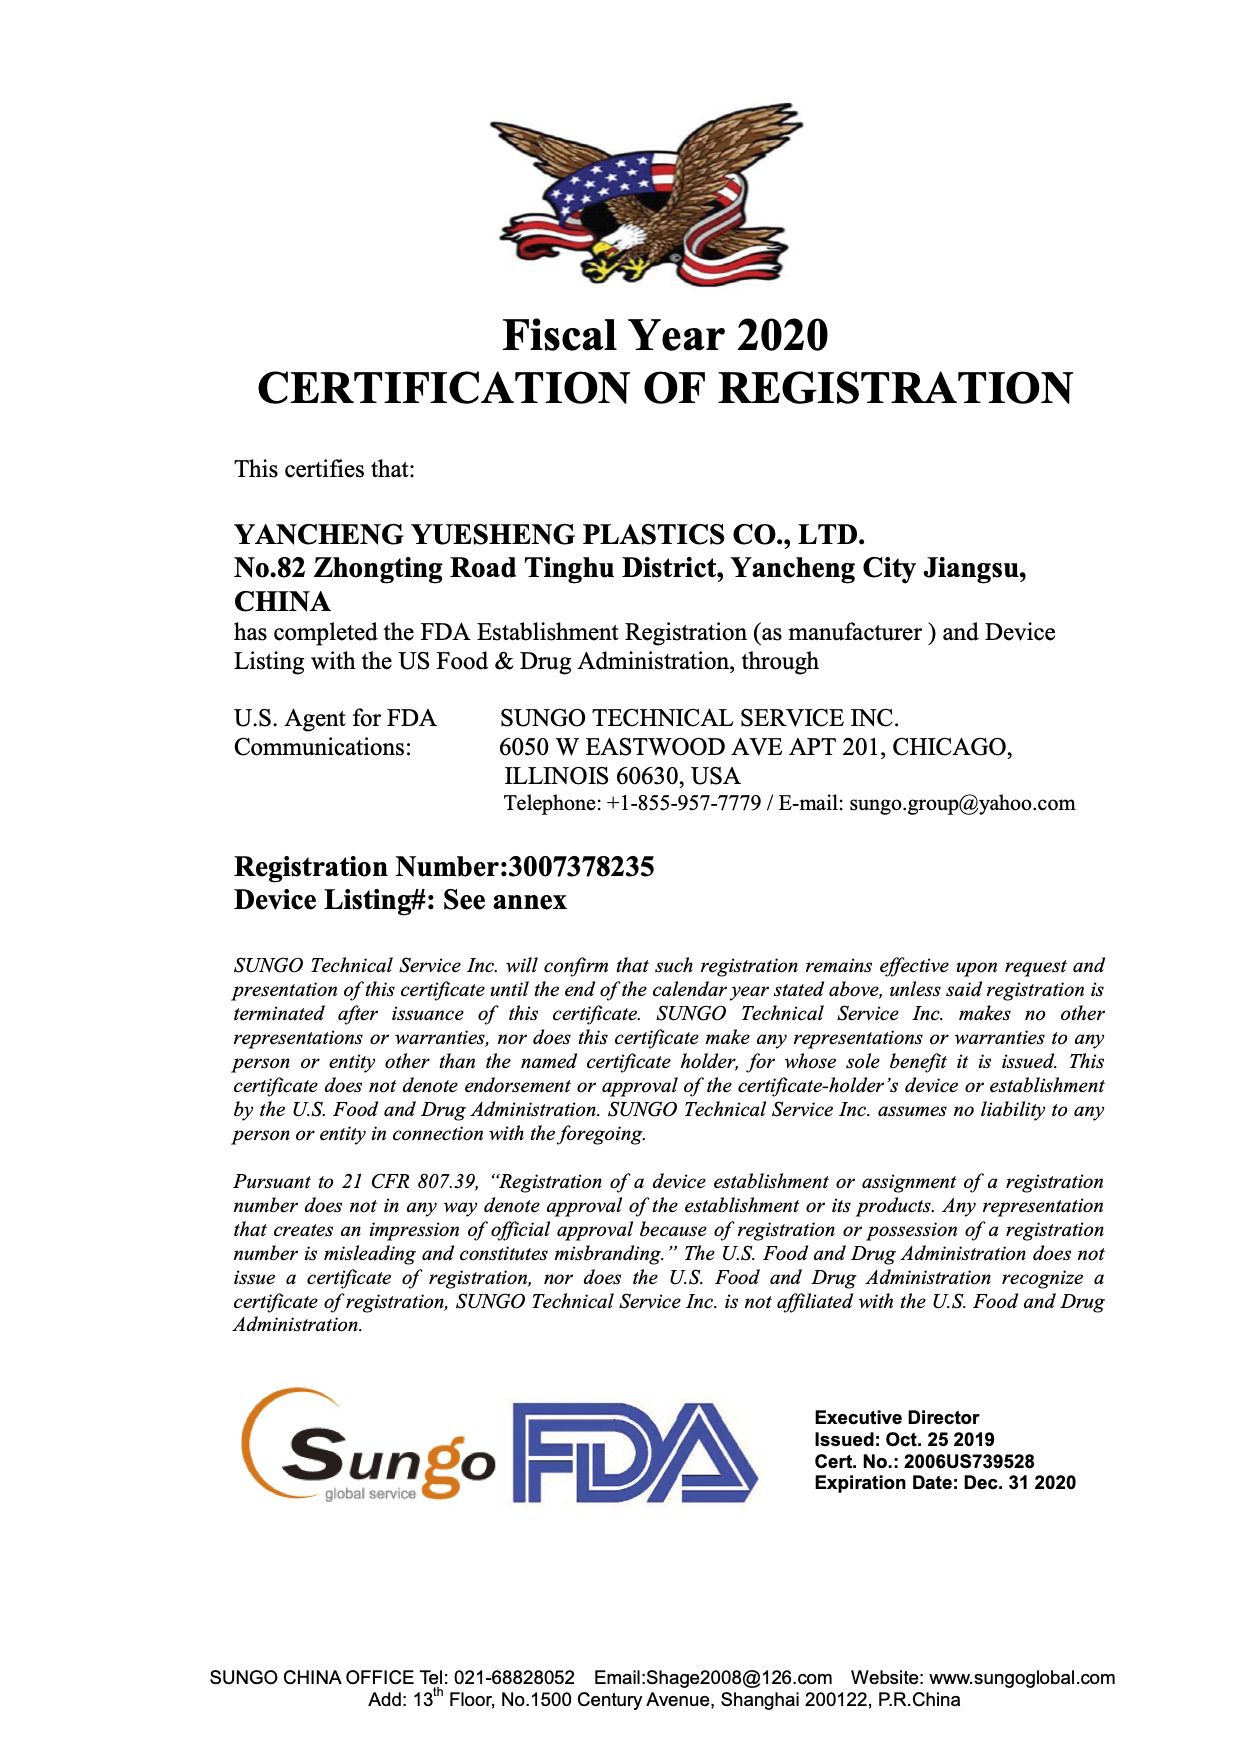 Yancheng Yuesheng-FDA medical certificate 2020